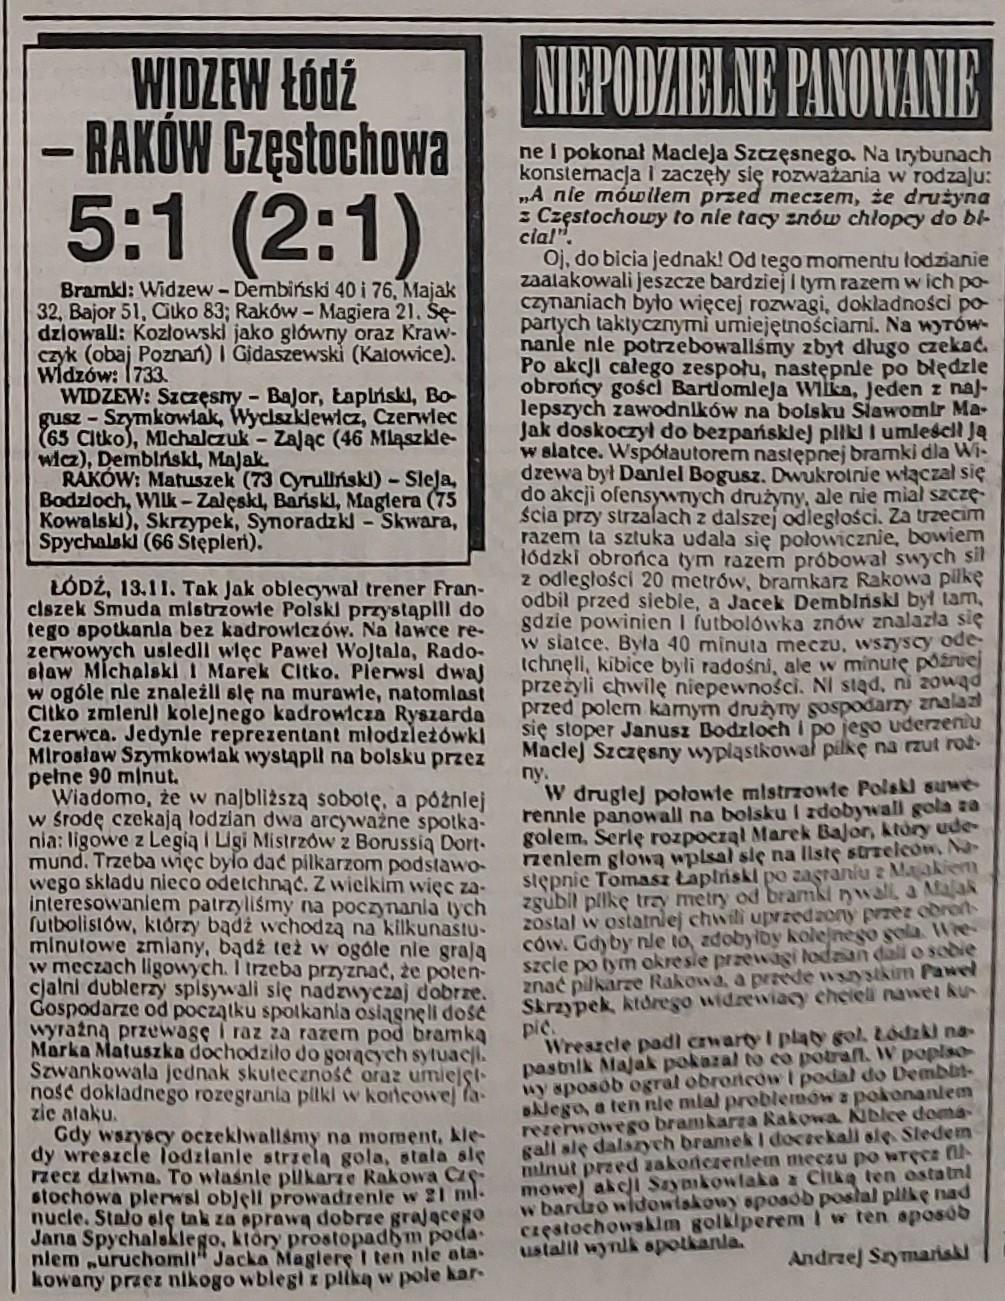 Widzew Łódź - Raków Częstochowa 5:1 (13.11.1996) Przegląd Sportowy